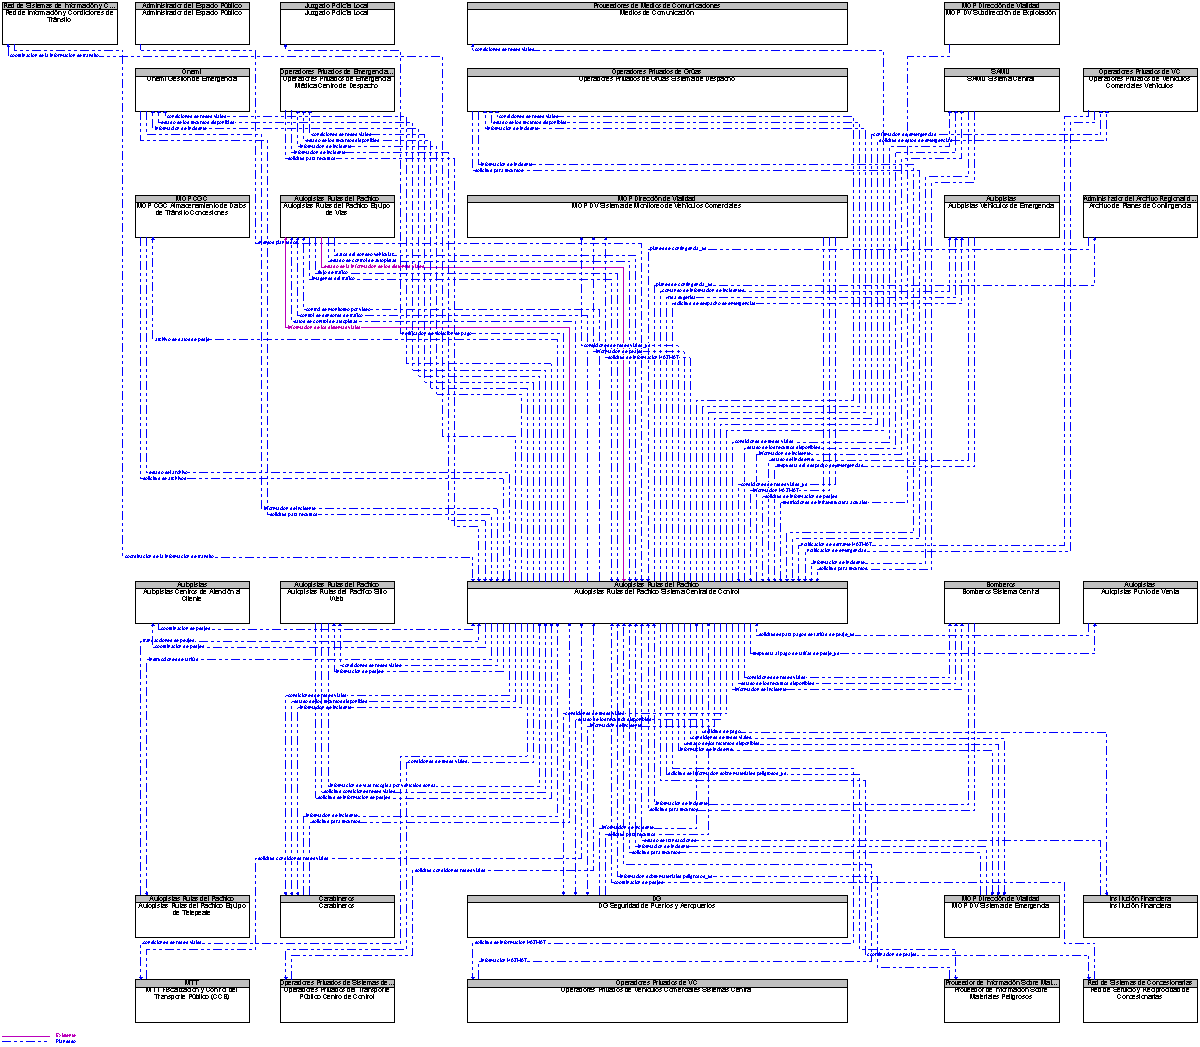 Diagrama Del Contexto por Autopistas Rutas del Pacfico Sistema Central de Control